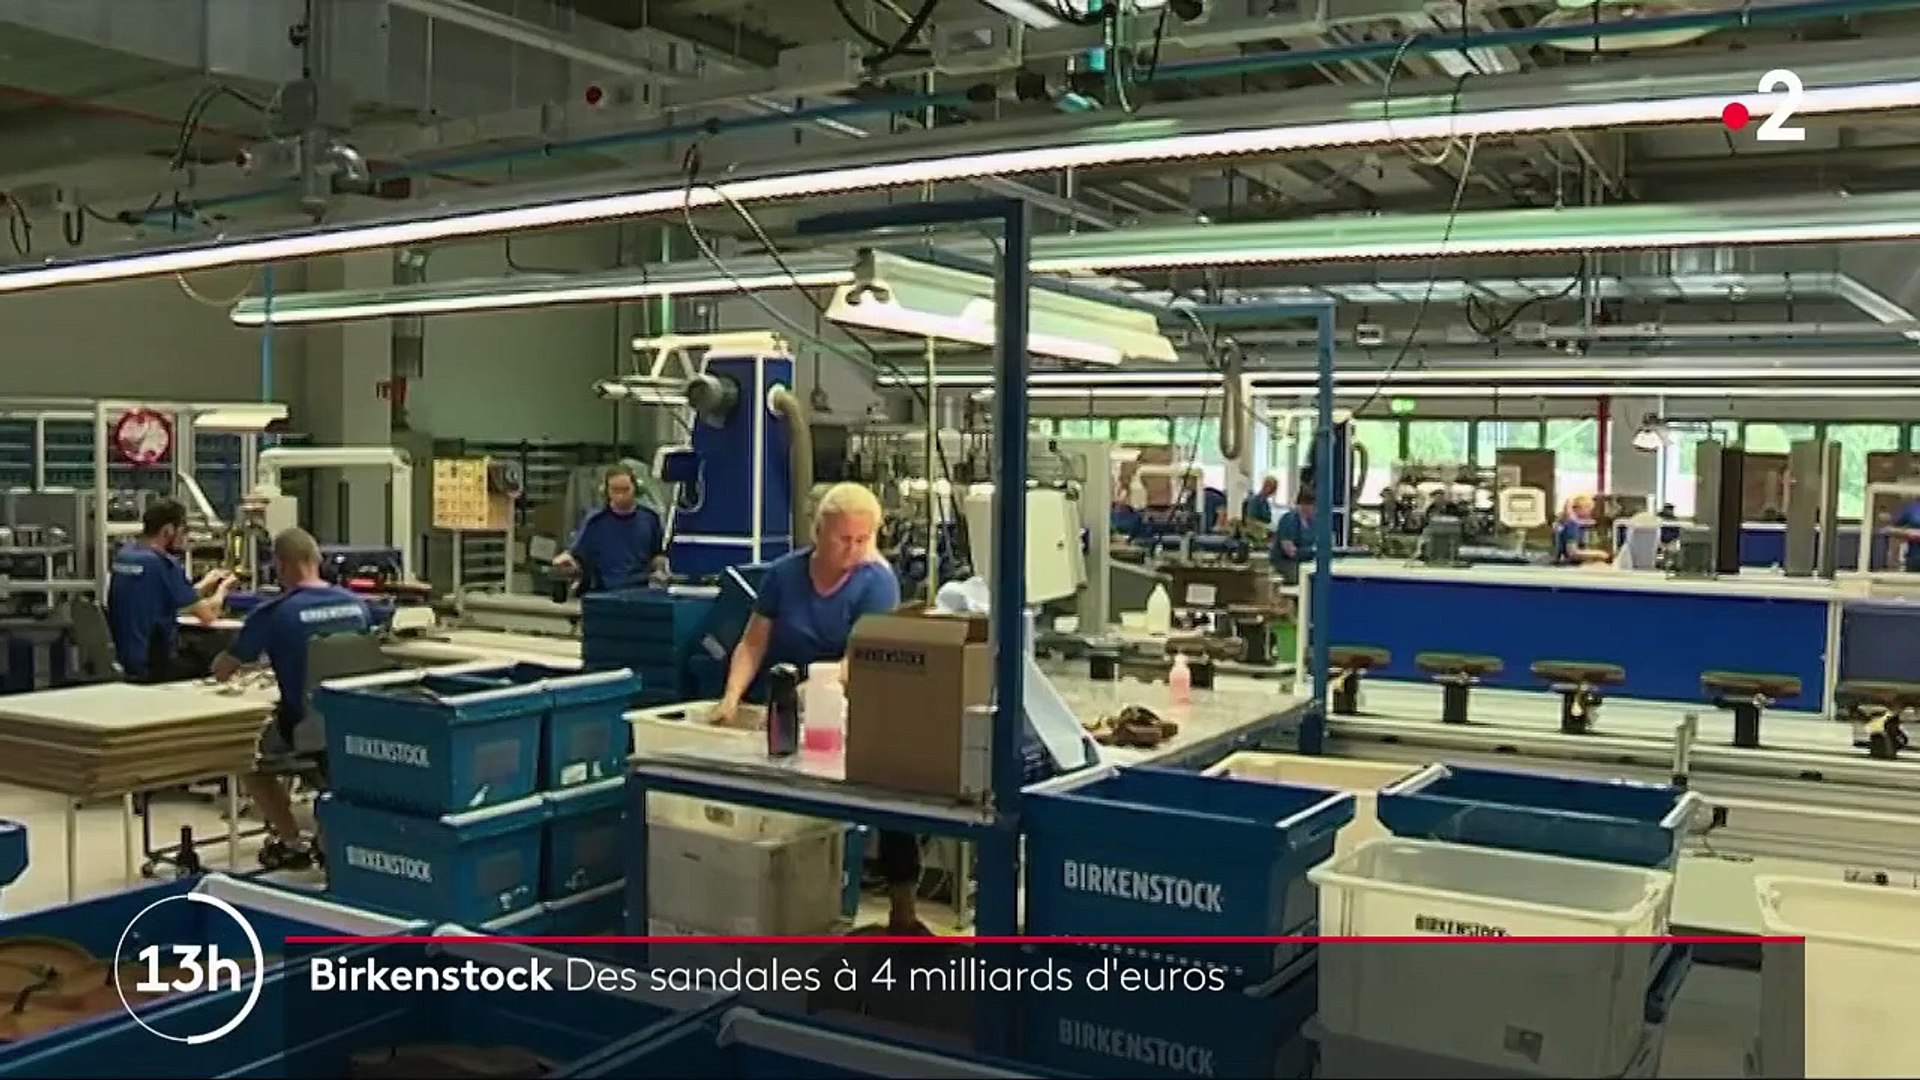 Consommation : les Birkenstock valent de l'or - Vidéo Dailymotion